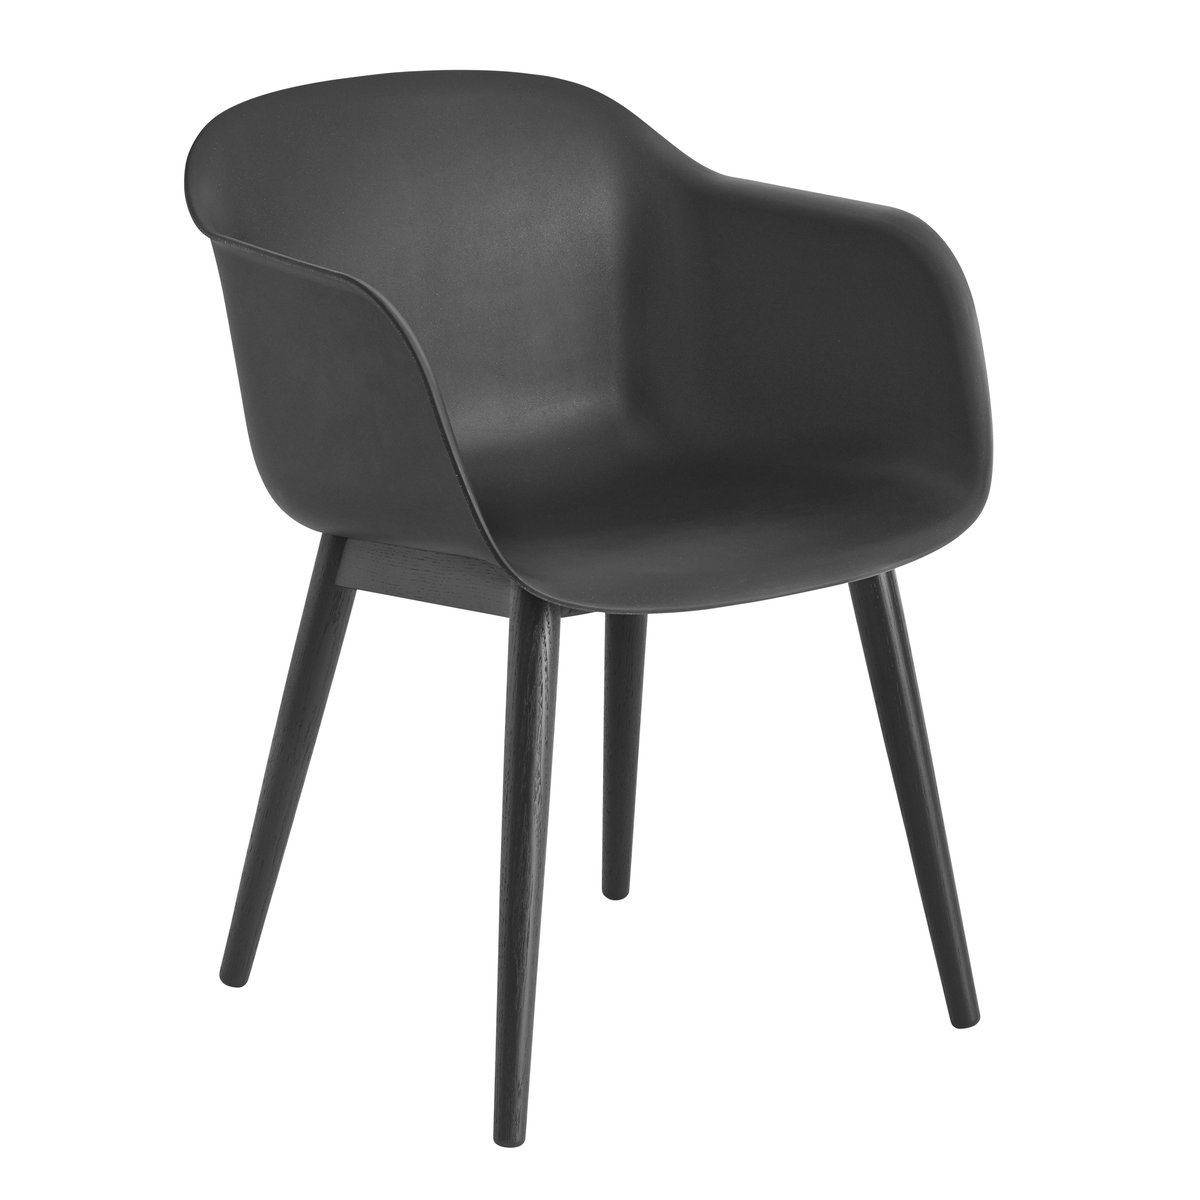 Muuto Fiber Chair stoel met armleuningen en houten poten Anthracite Black (kunststof)